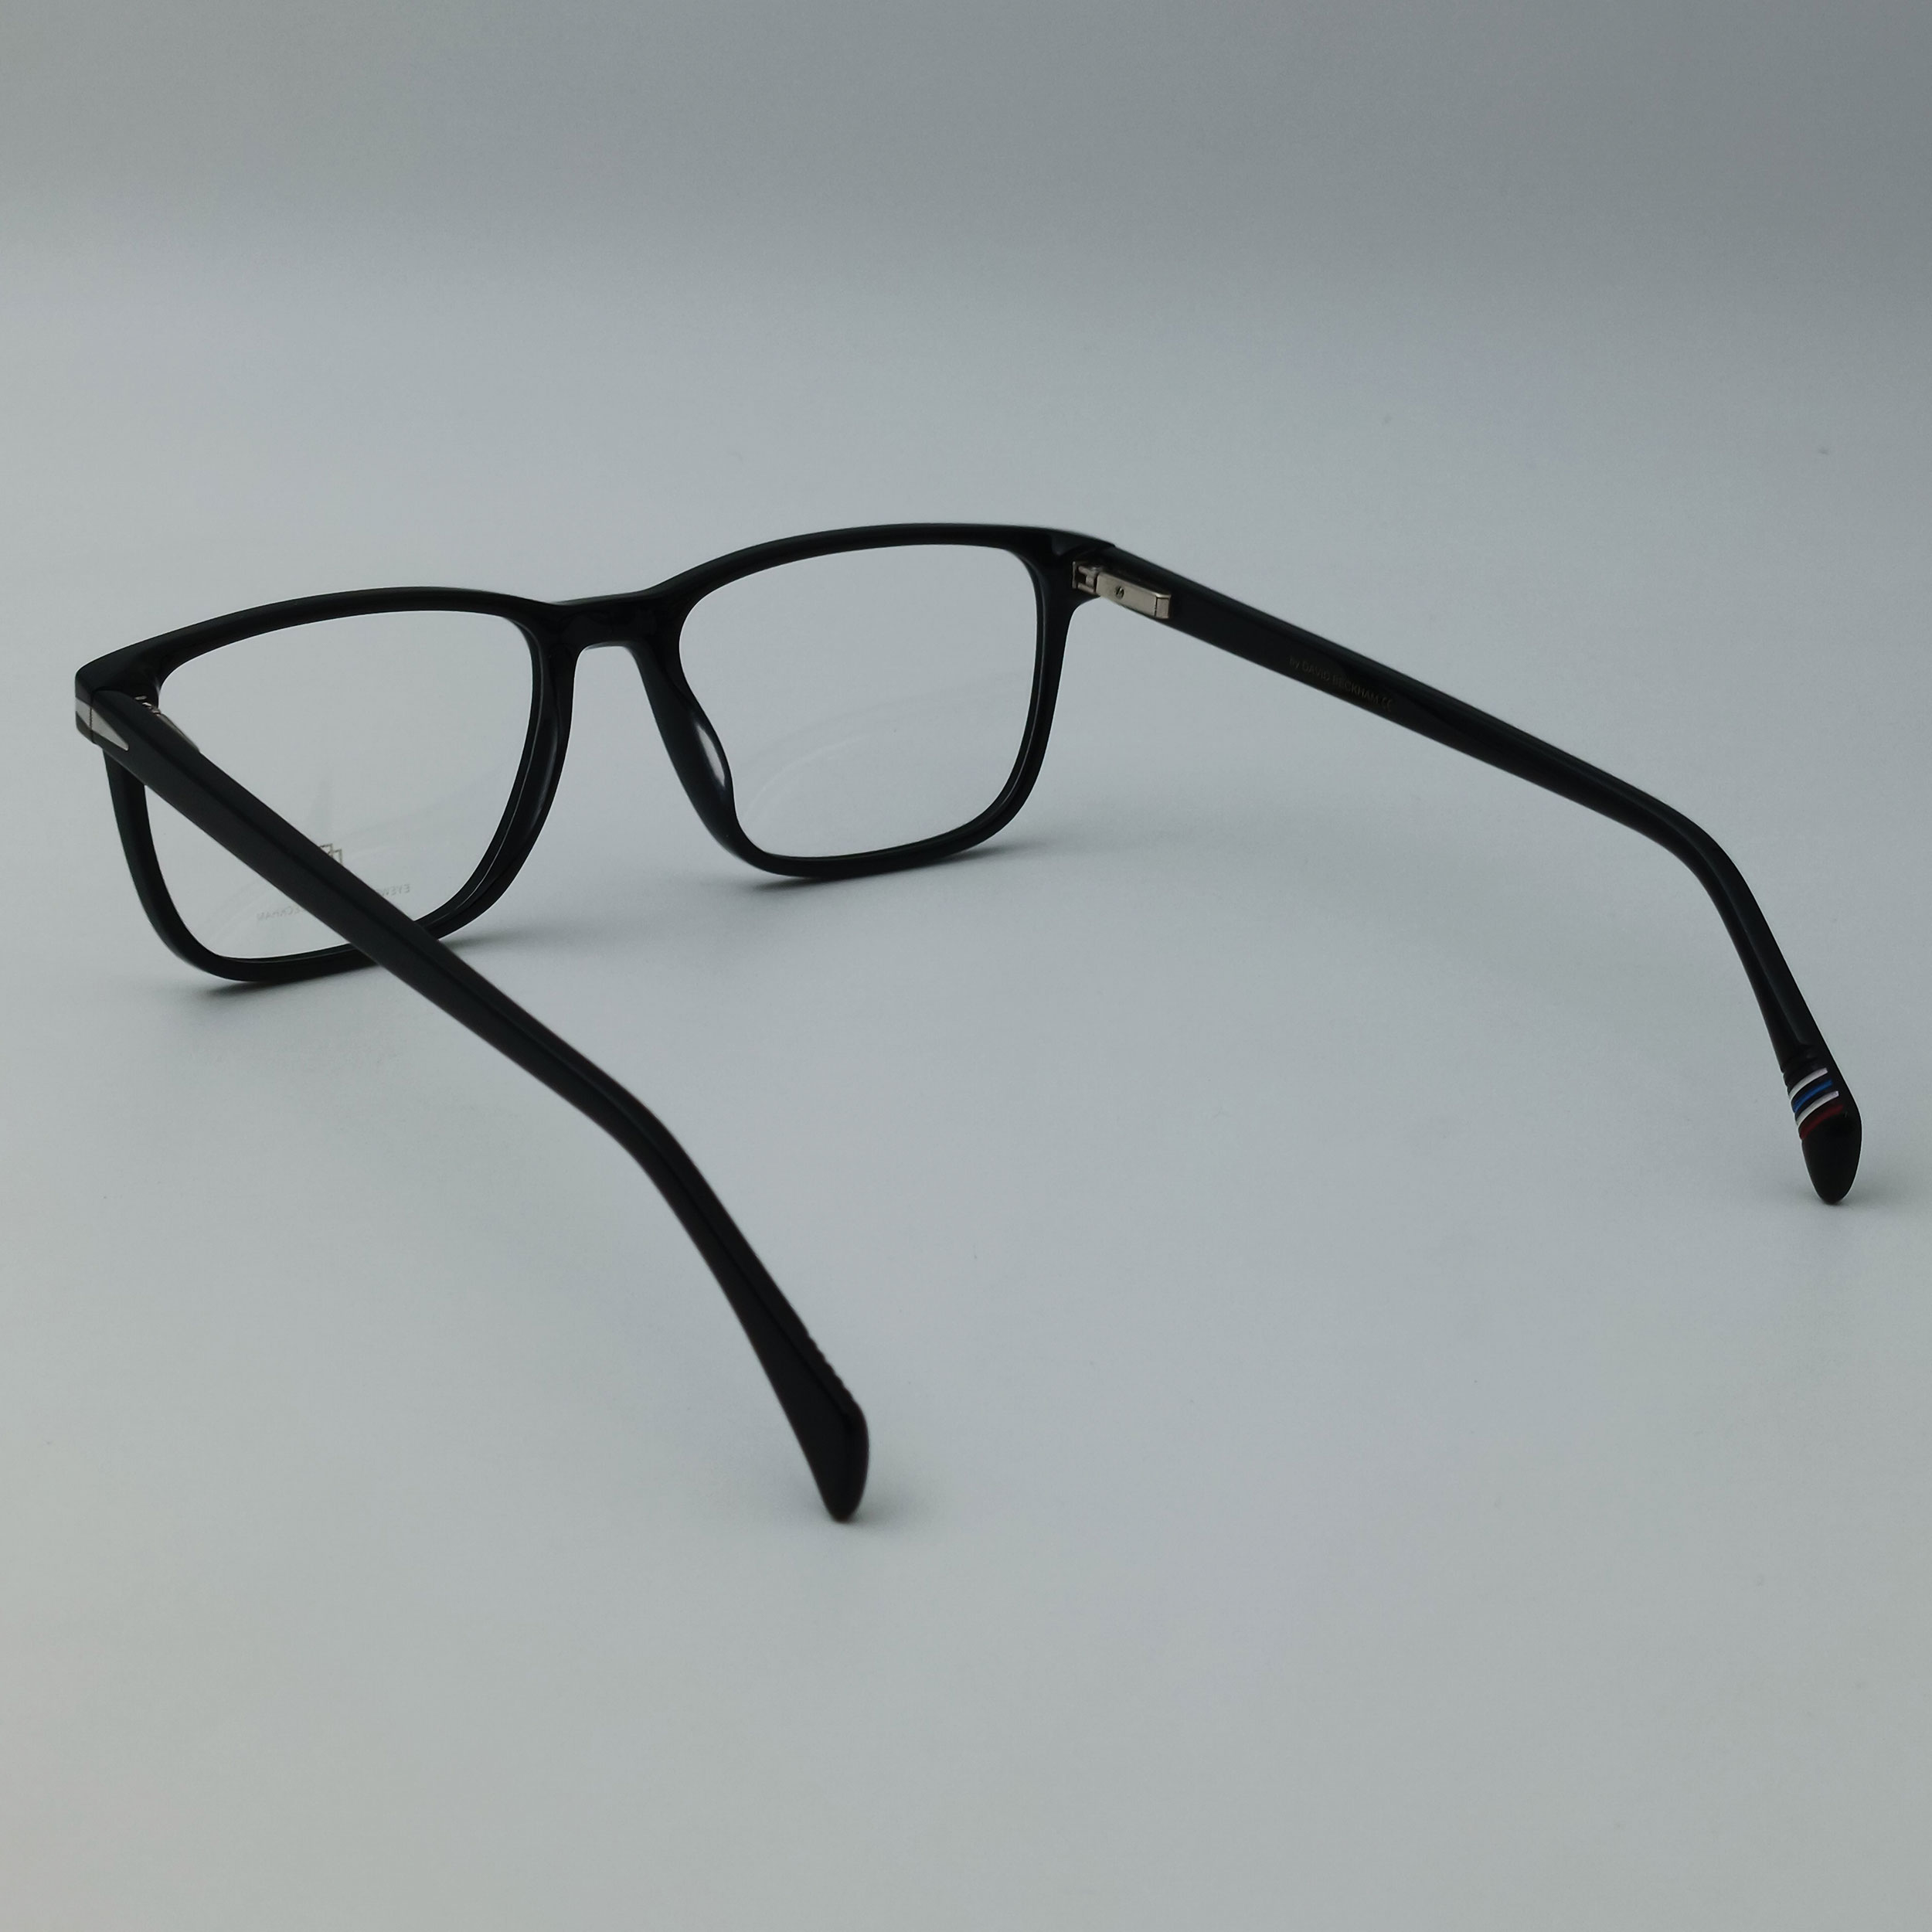 فریم عینک طبی دیوید بکهام مدل 7805 C1 -  - 5